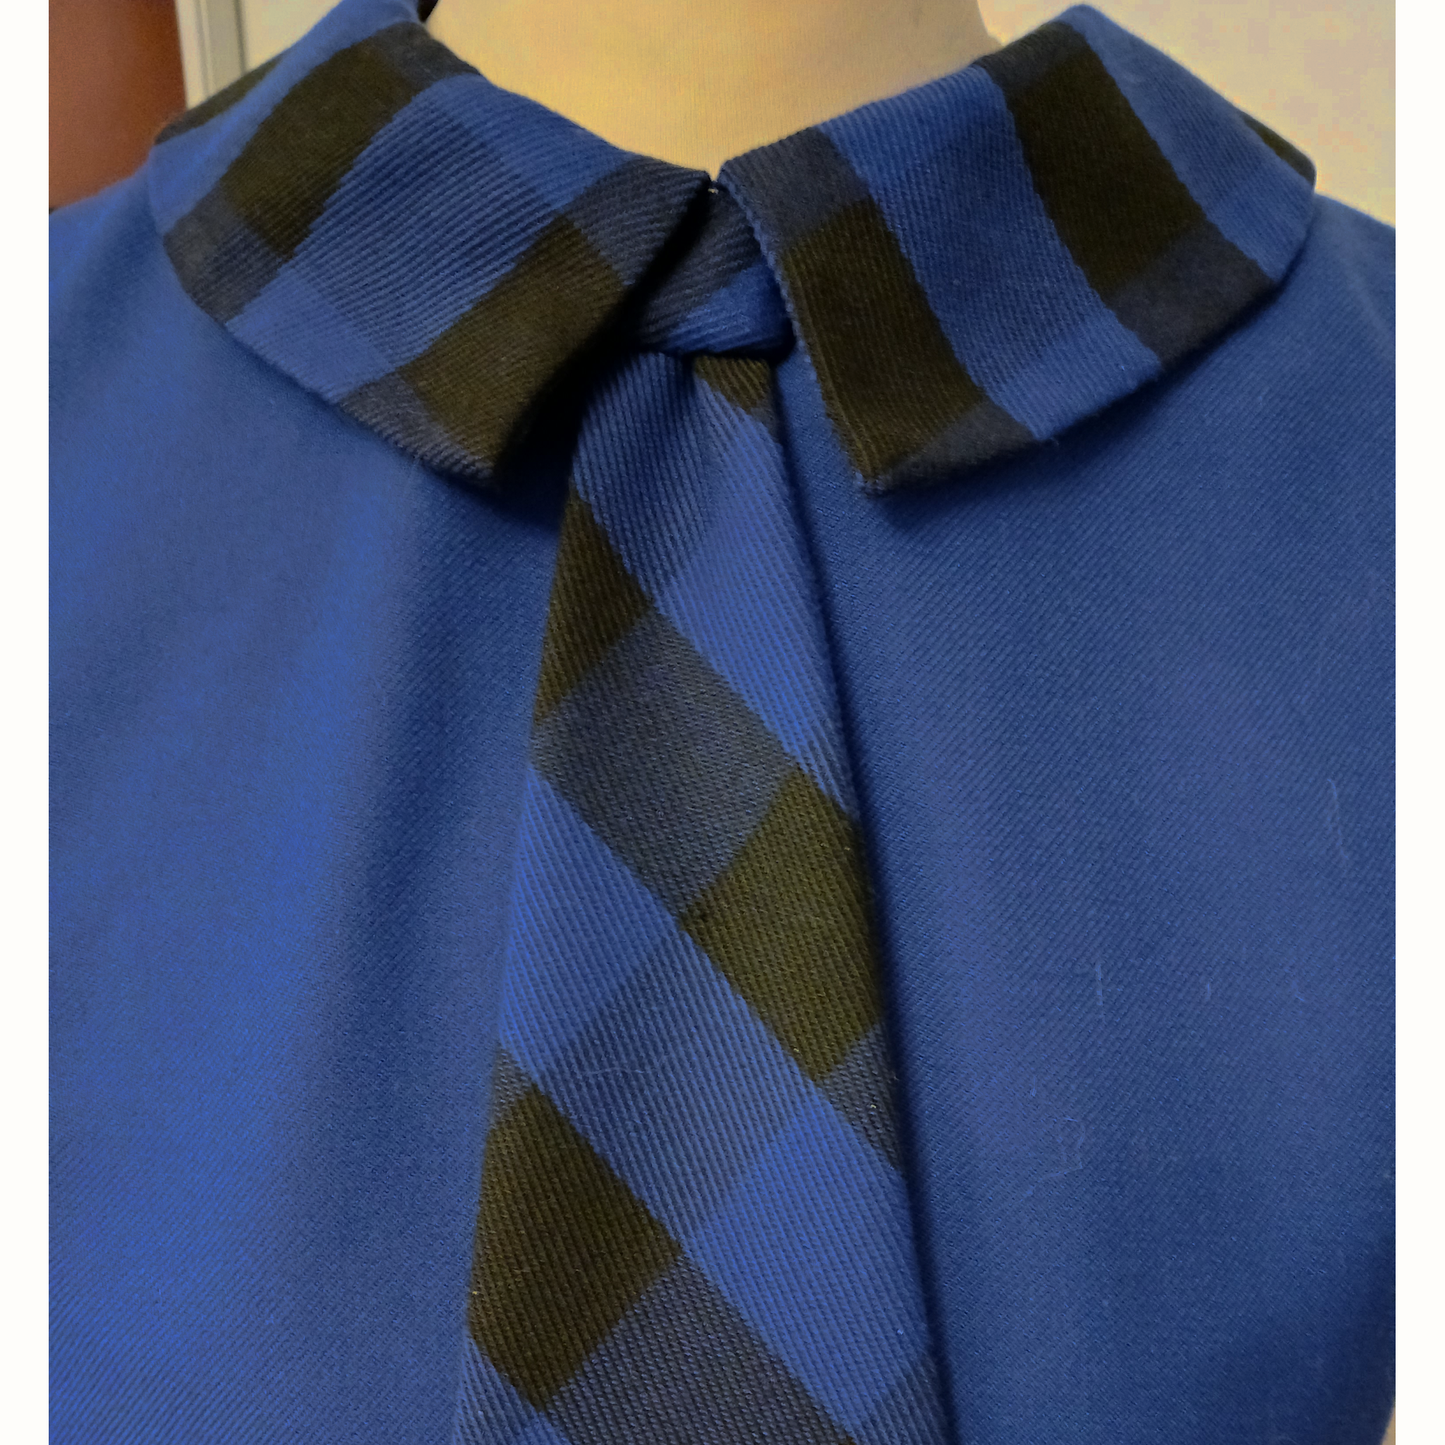 Sinimusta kravattimekko 1960-luku